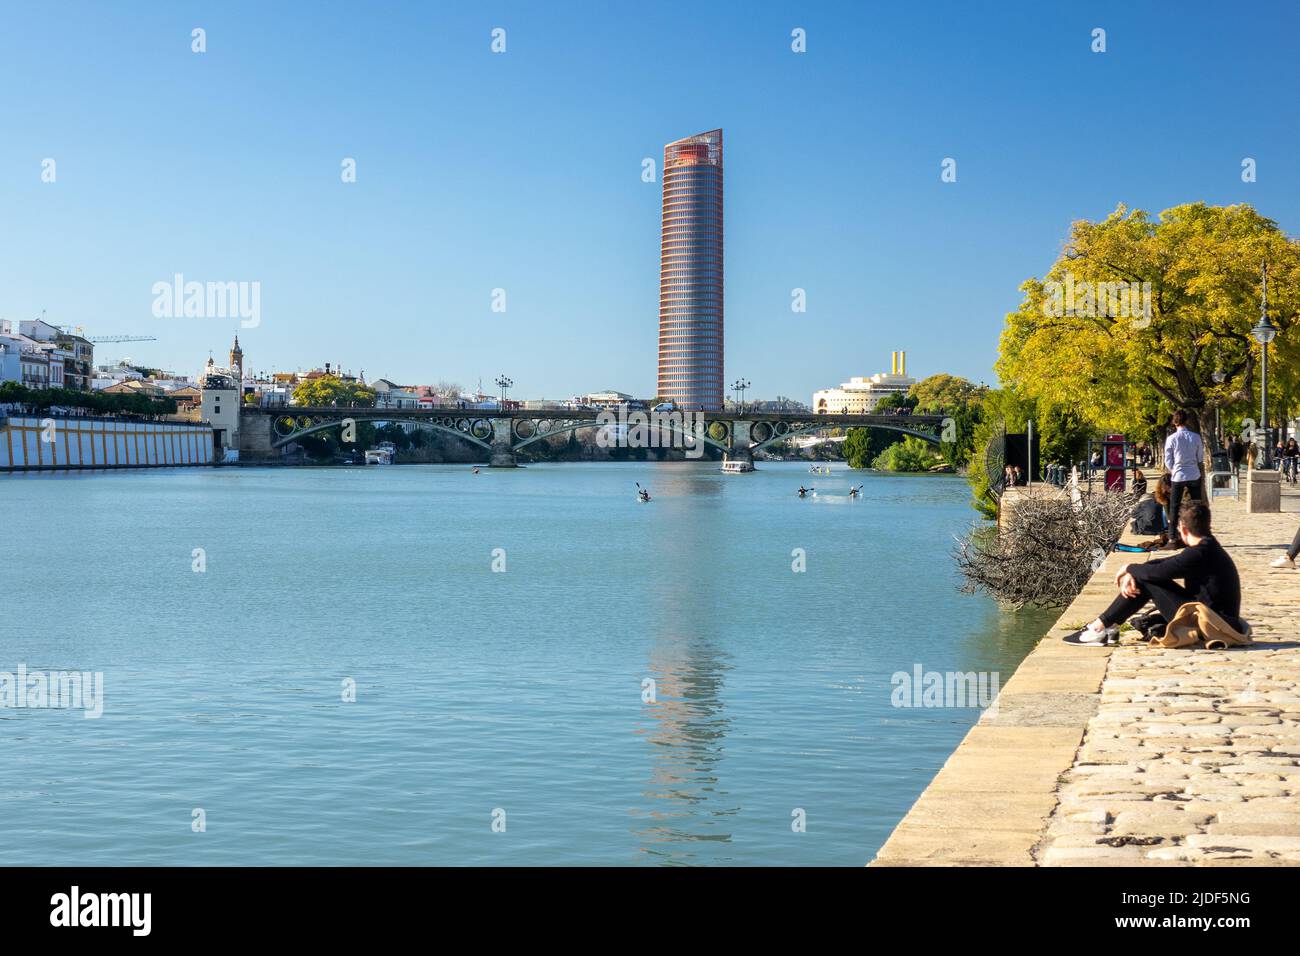 Torre Sevilla (Tour de Séville) le fleuve Guadalquivir, Séville Espagne, gratte-ciel moderne c'est le Canal d'Alfonso XIII et le Puente de Isabel II, Banque D'Images